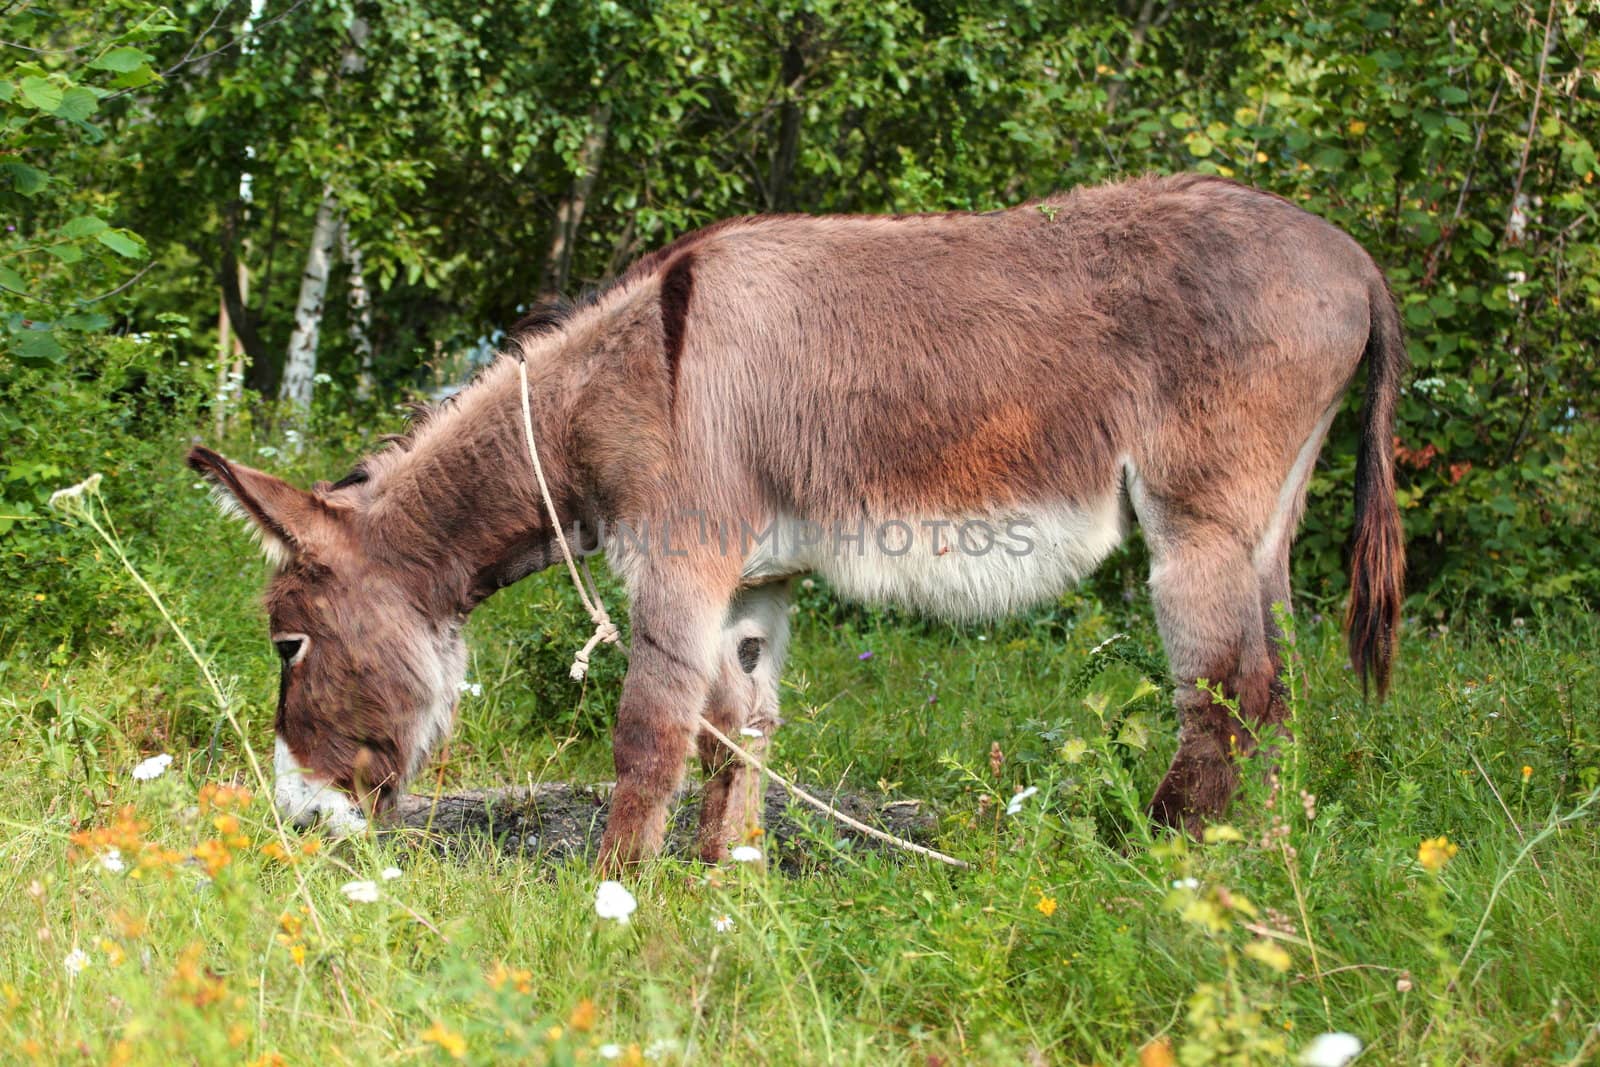 old donkey grazing in the field near a farm